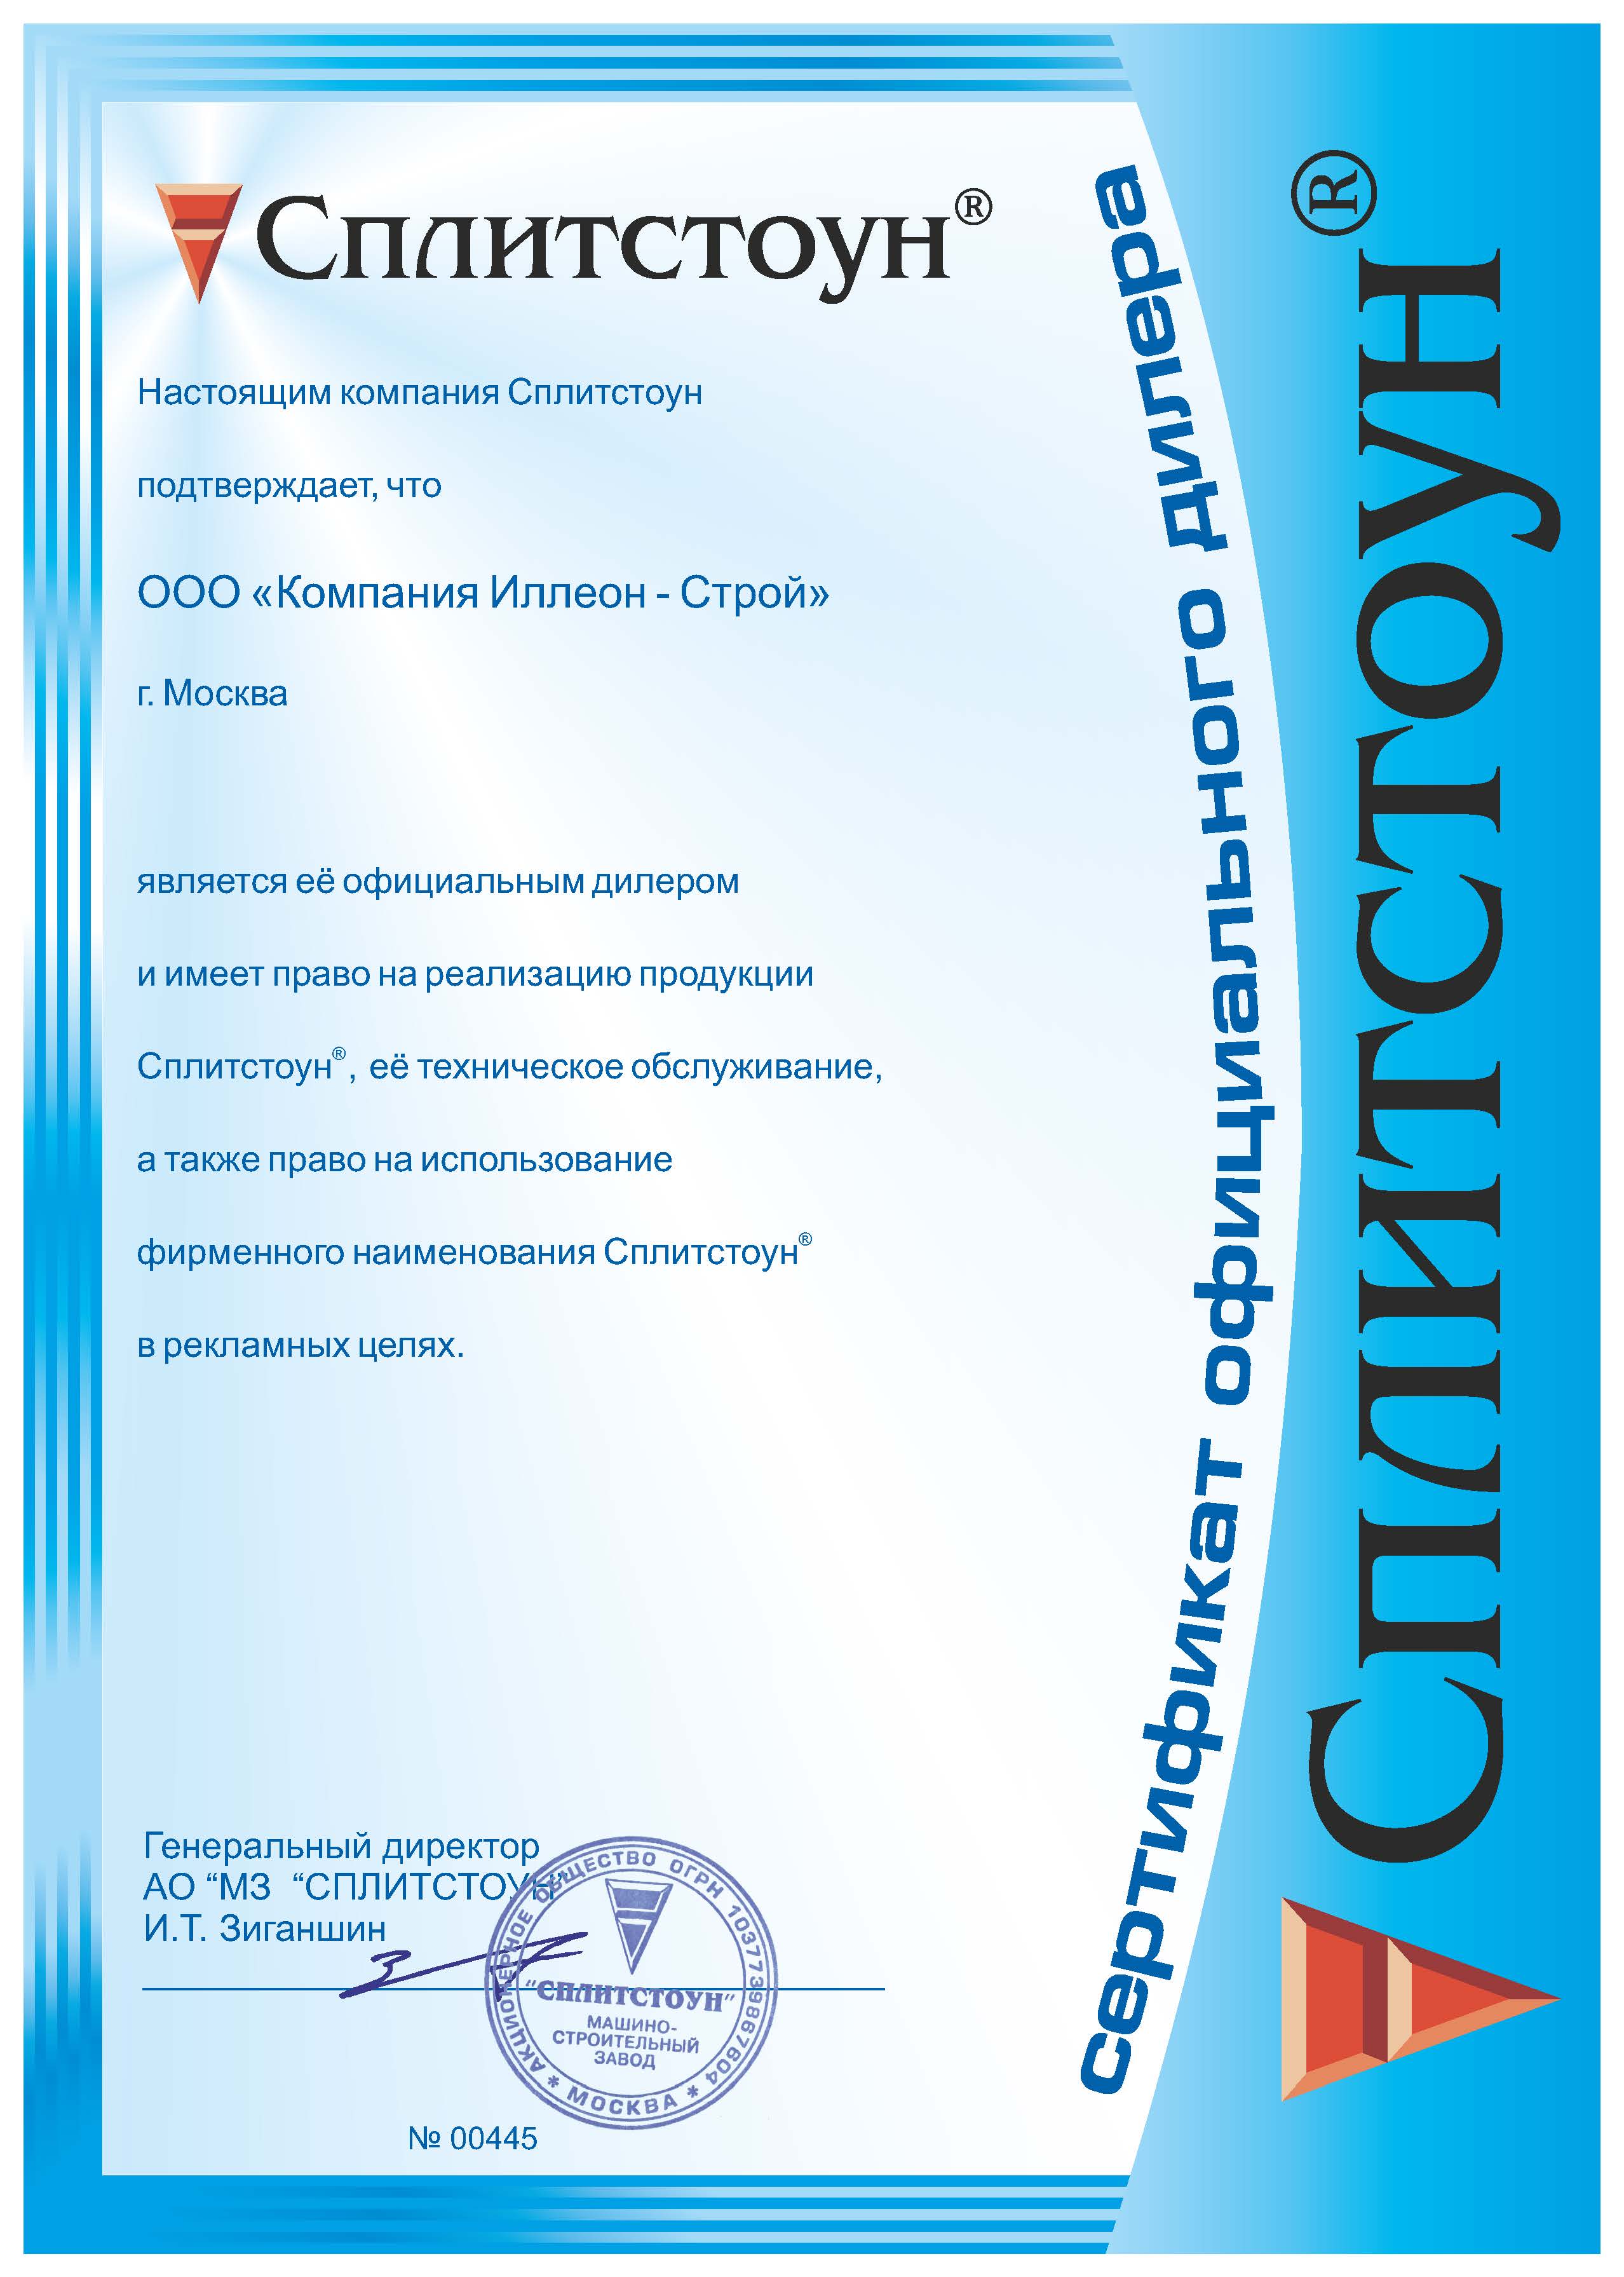 Сертификат официального дилера Сплитстоун